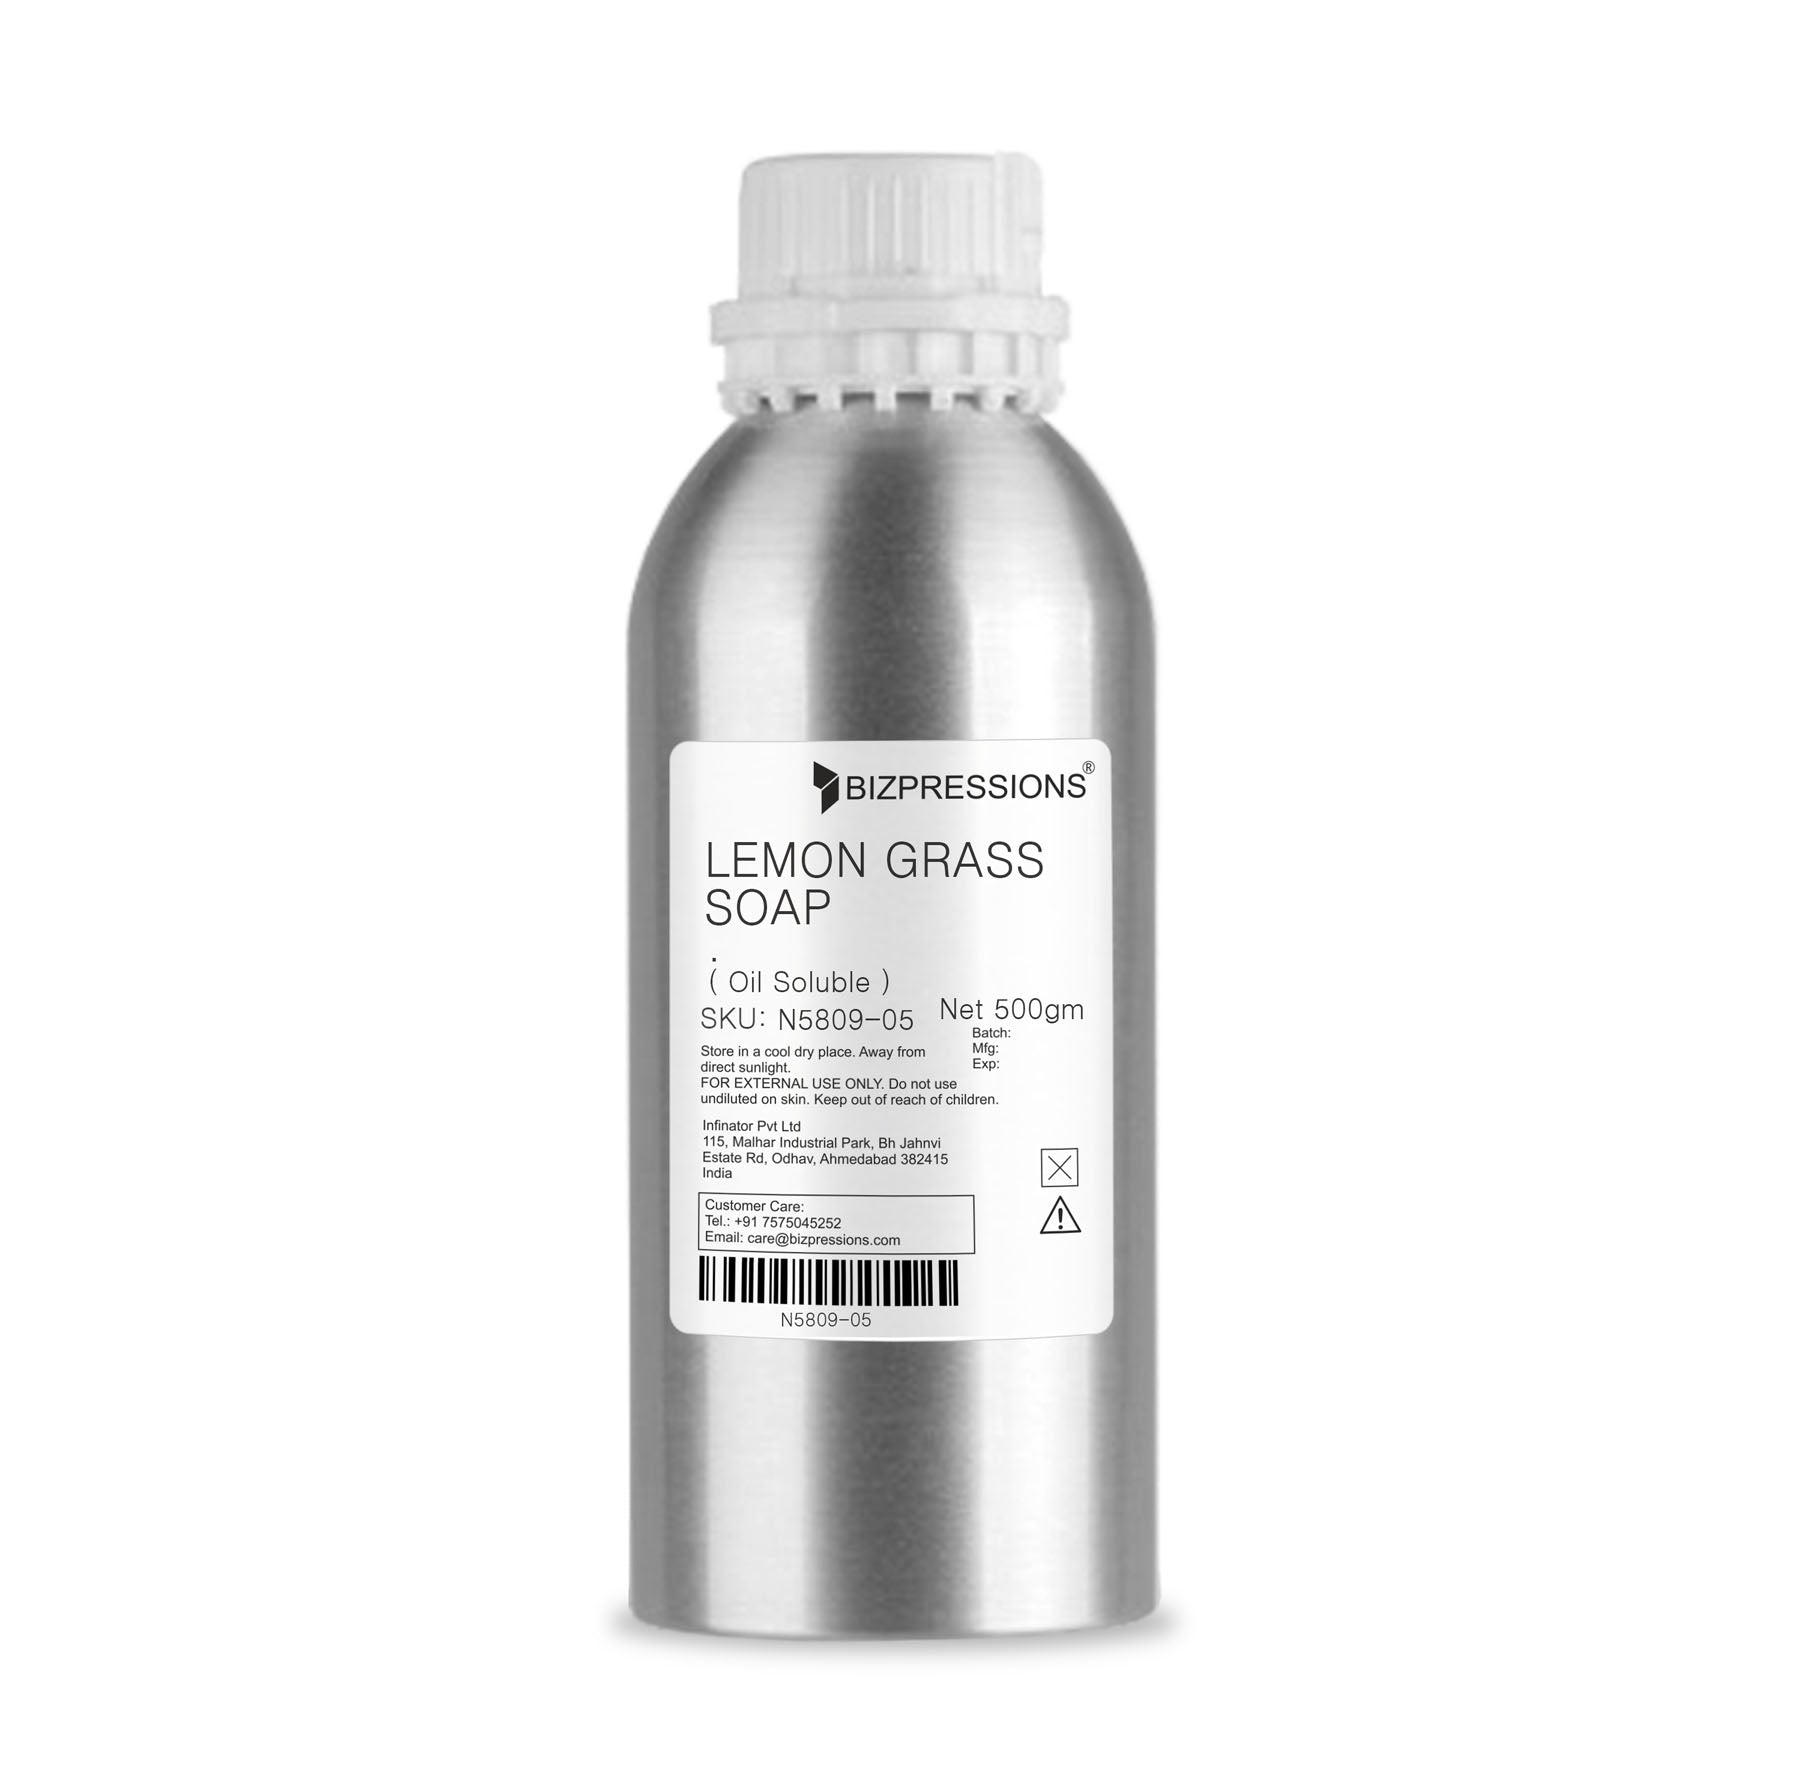 LEMON GRASS SOAP - Fragrance ( Oil Soluble ) - 500 gm